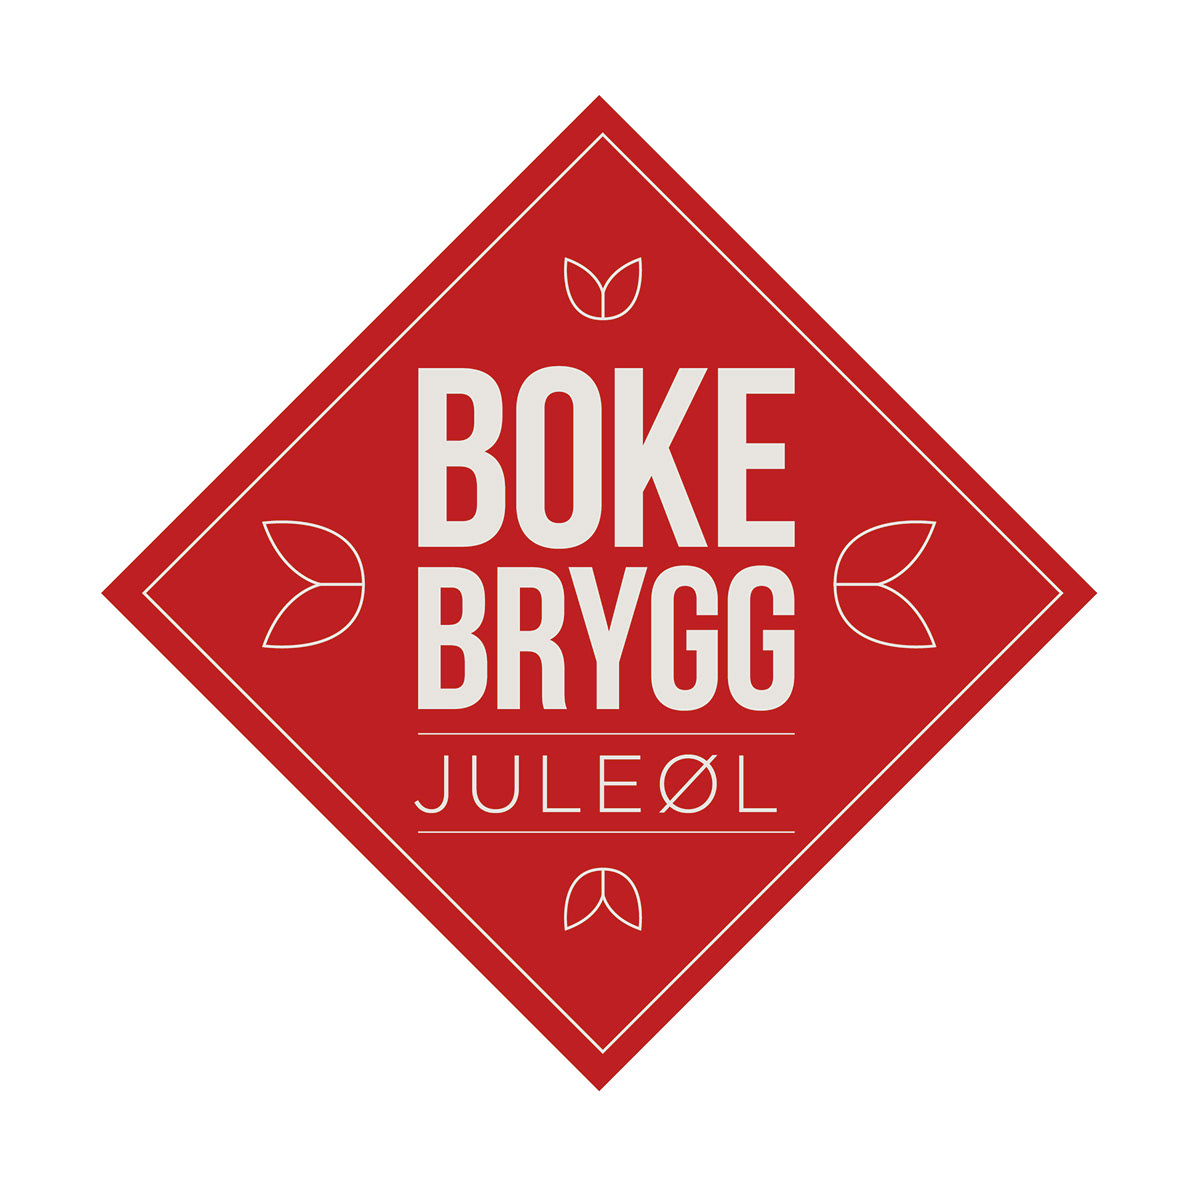 Bokebrygg beer Label